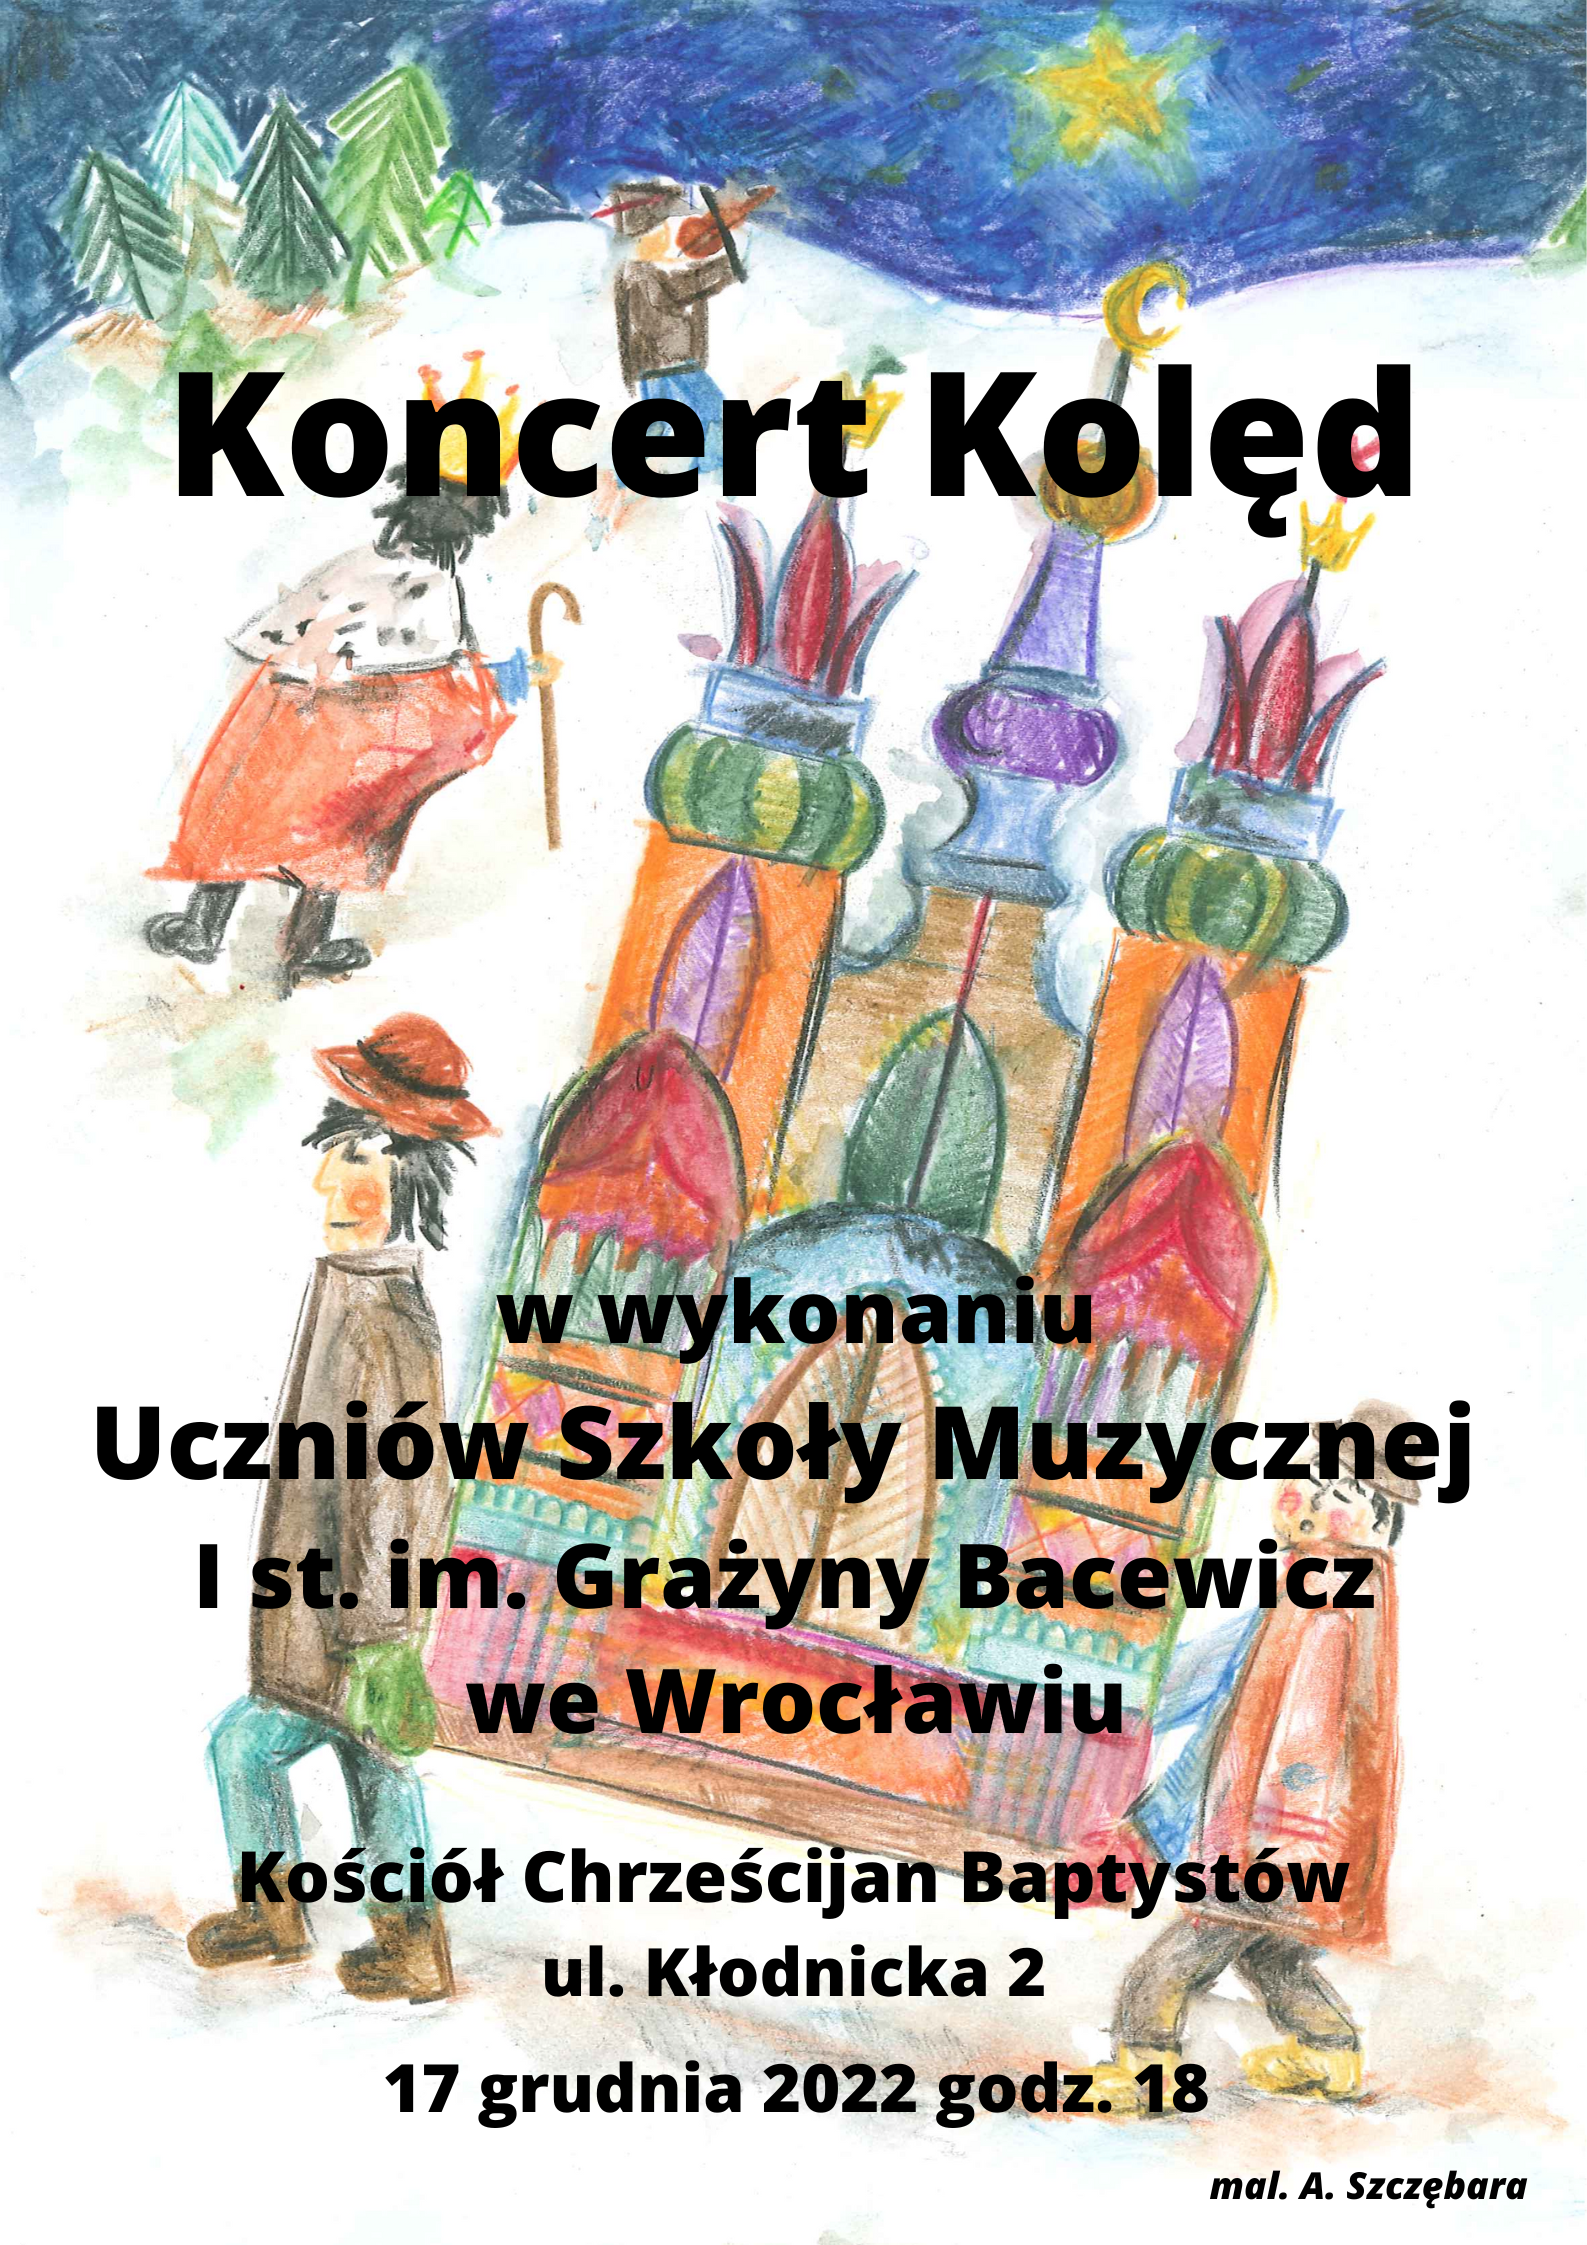 Plakat przedstawiający rysunek 2 kolędników i tekst "koncert Kolęd"